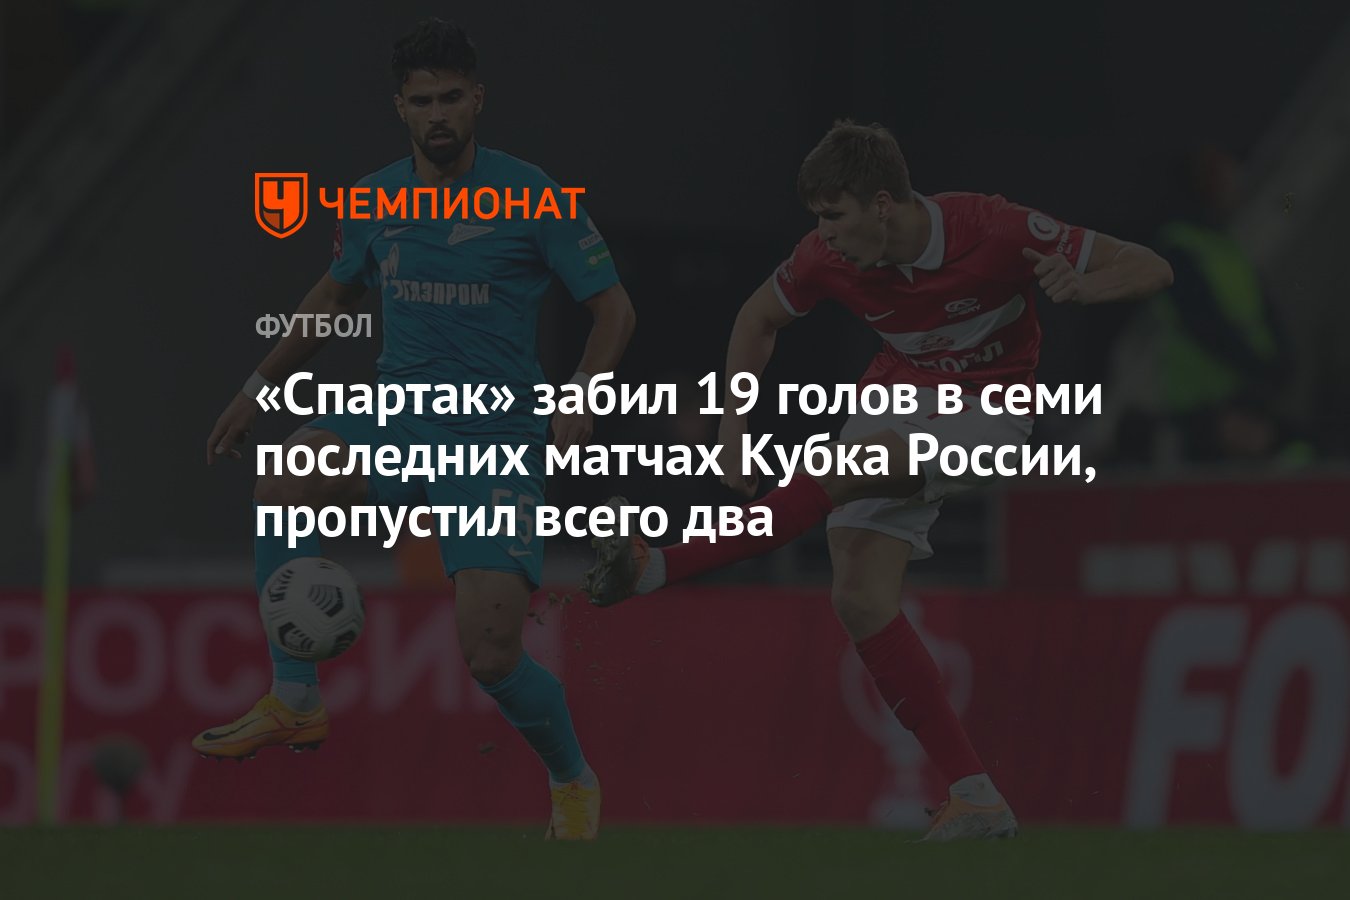 Спартак» забил 19 голов в семи последних матчах Кубка России, пропустил  всего два - Чемпионат